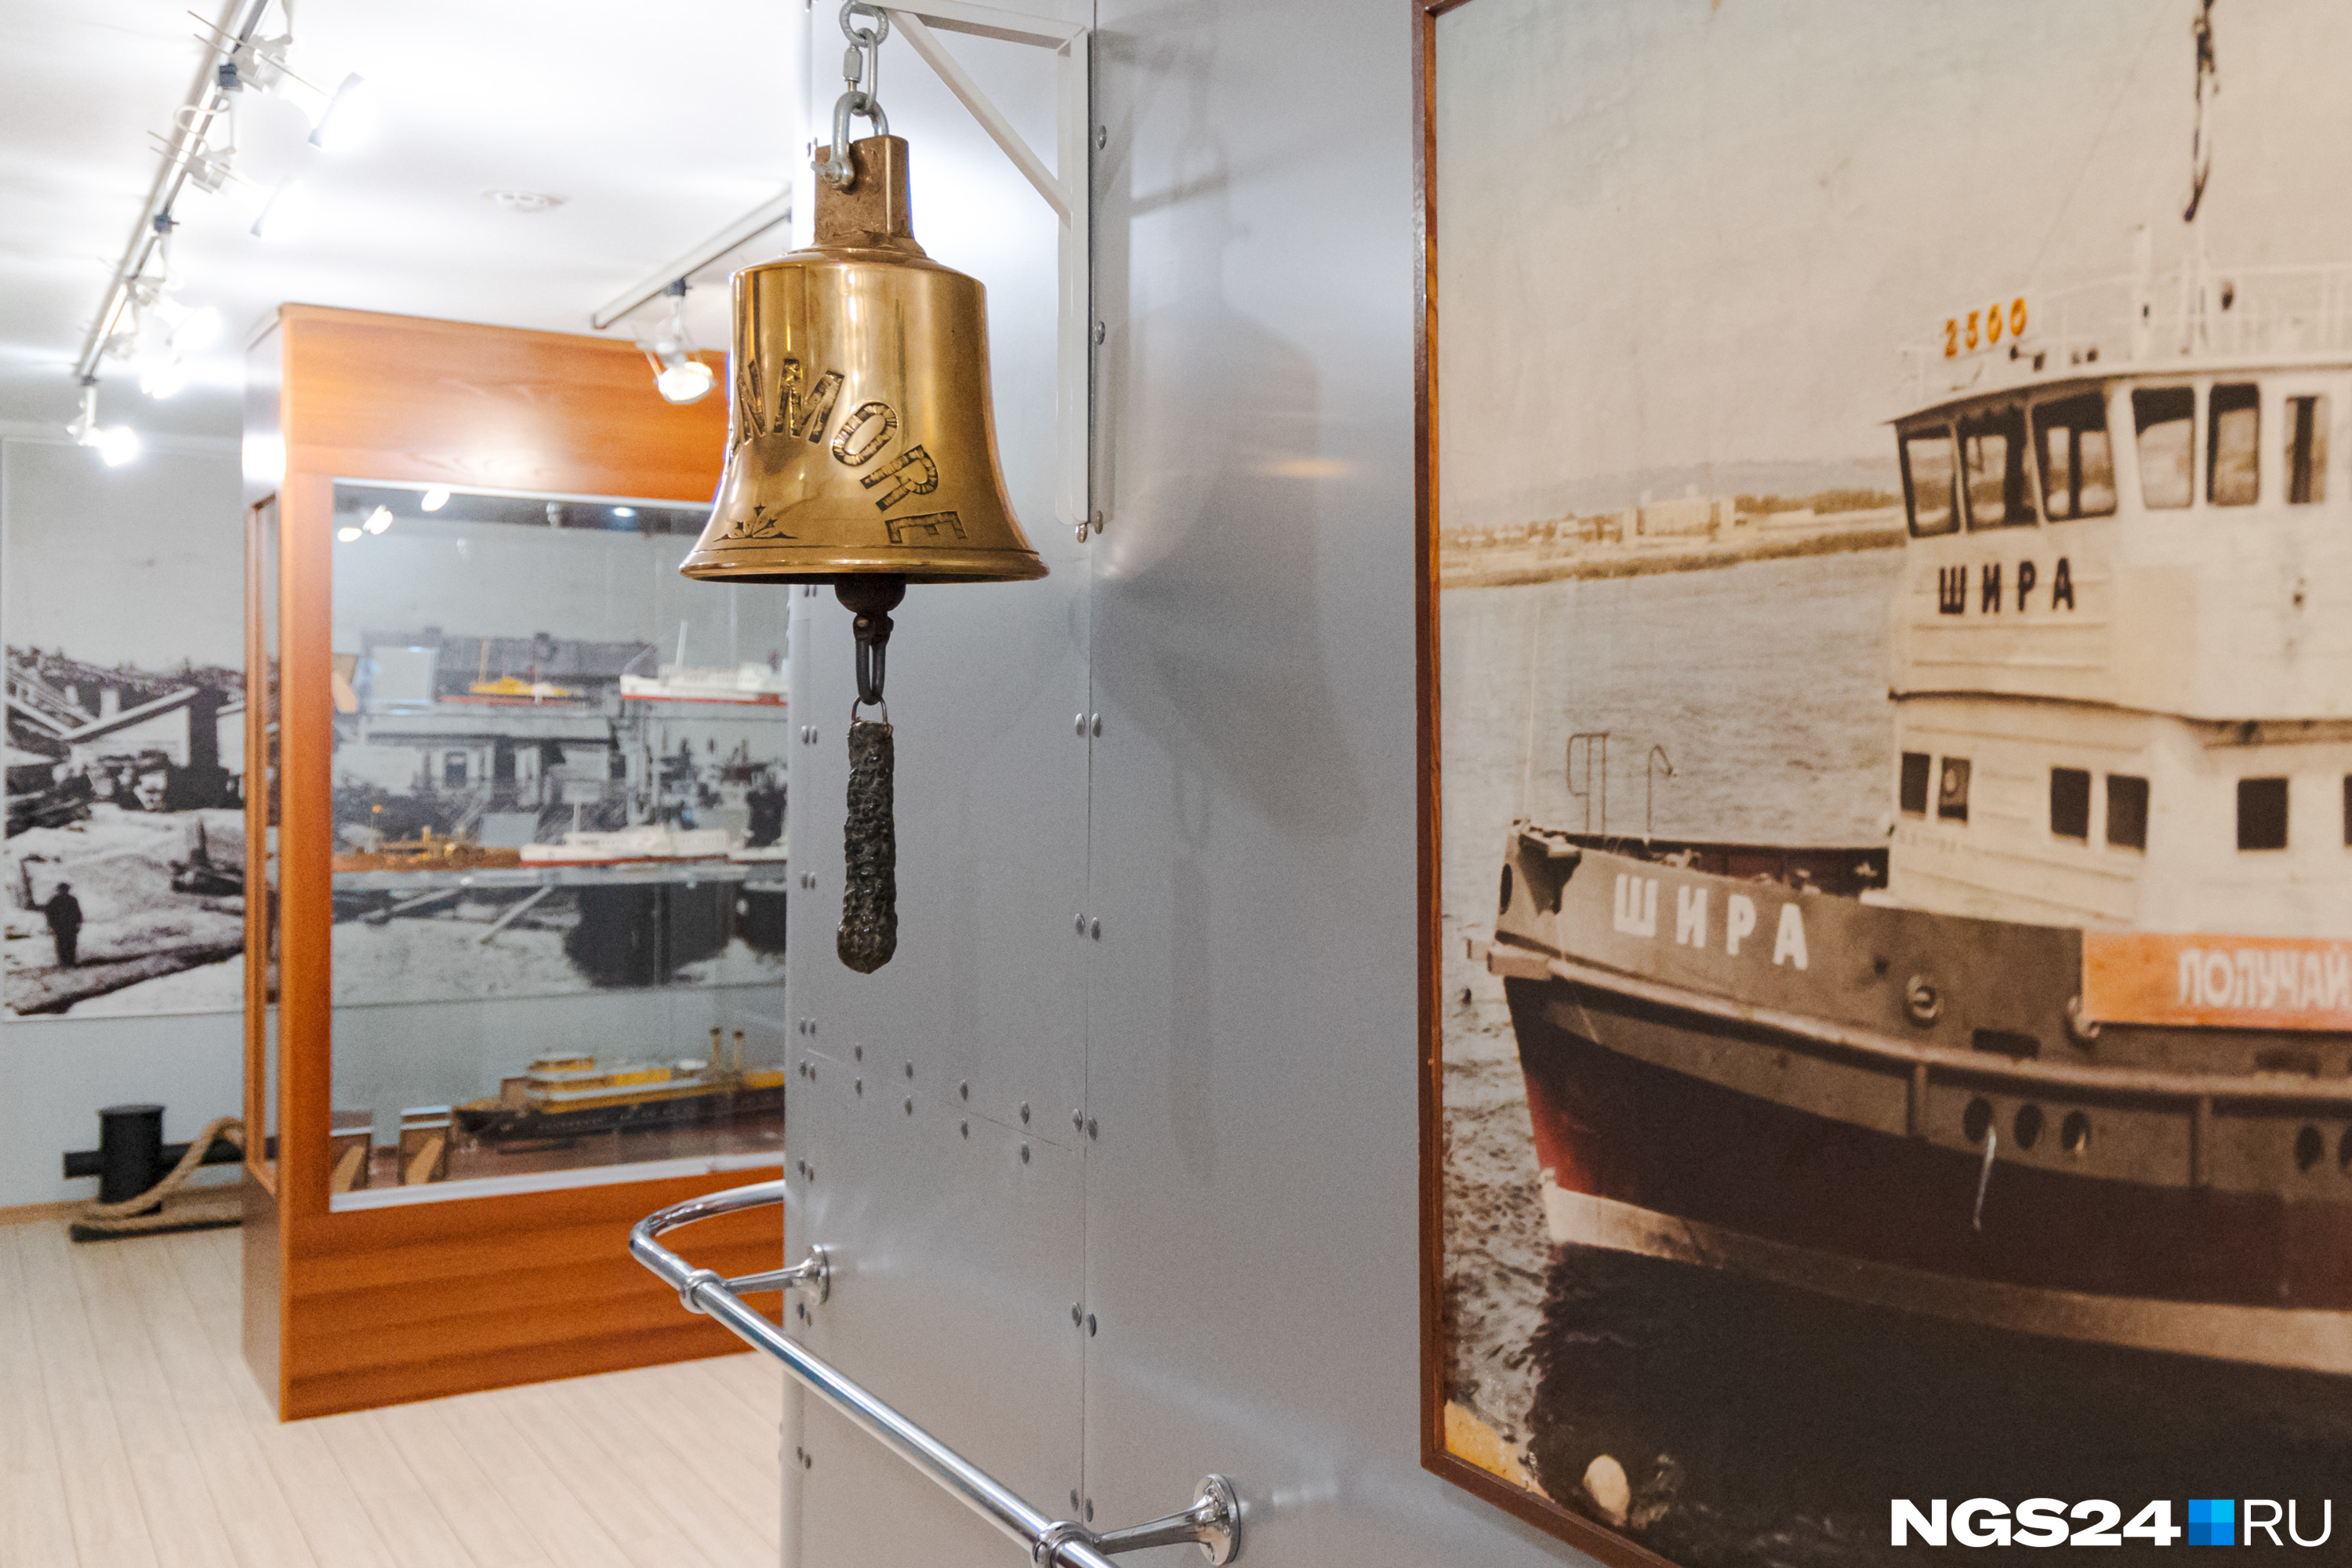 Один из старейших экземпляров музея: судовой колокол-рында с парохода «Гленмор», который прибыл на Енисей Северным морским путем из Англии в 1897 году